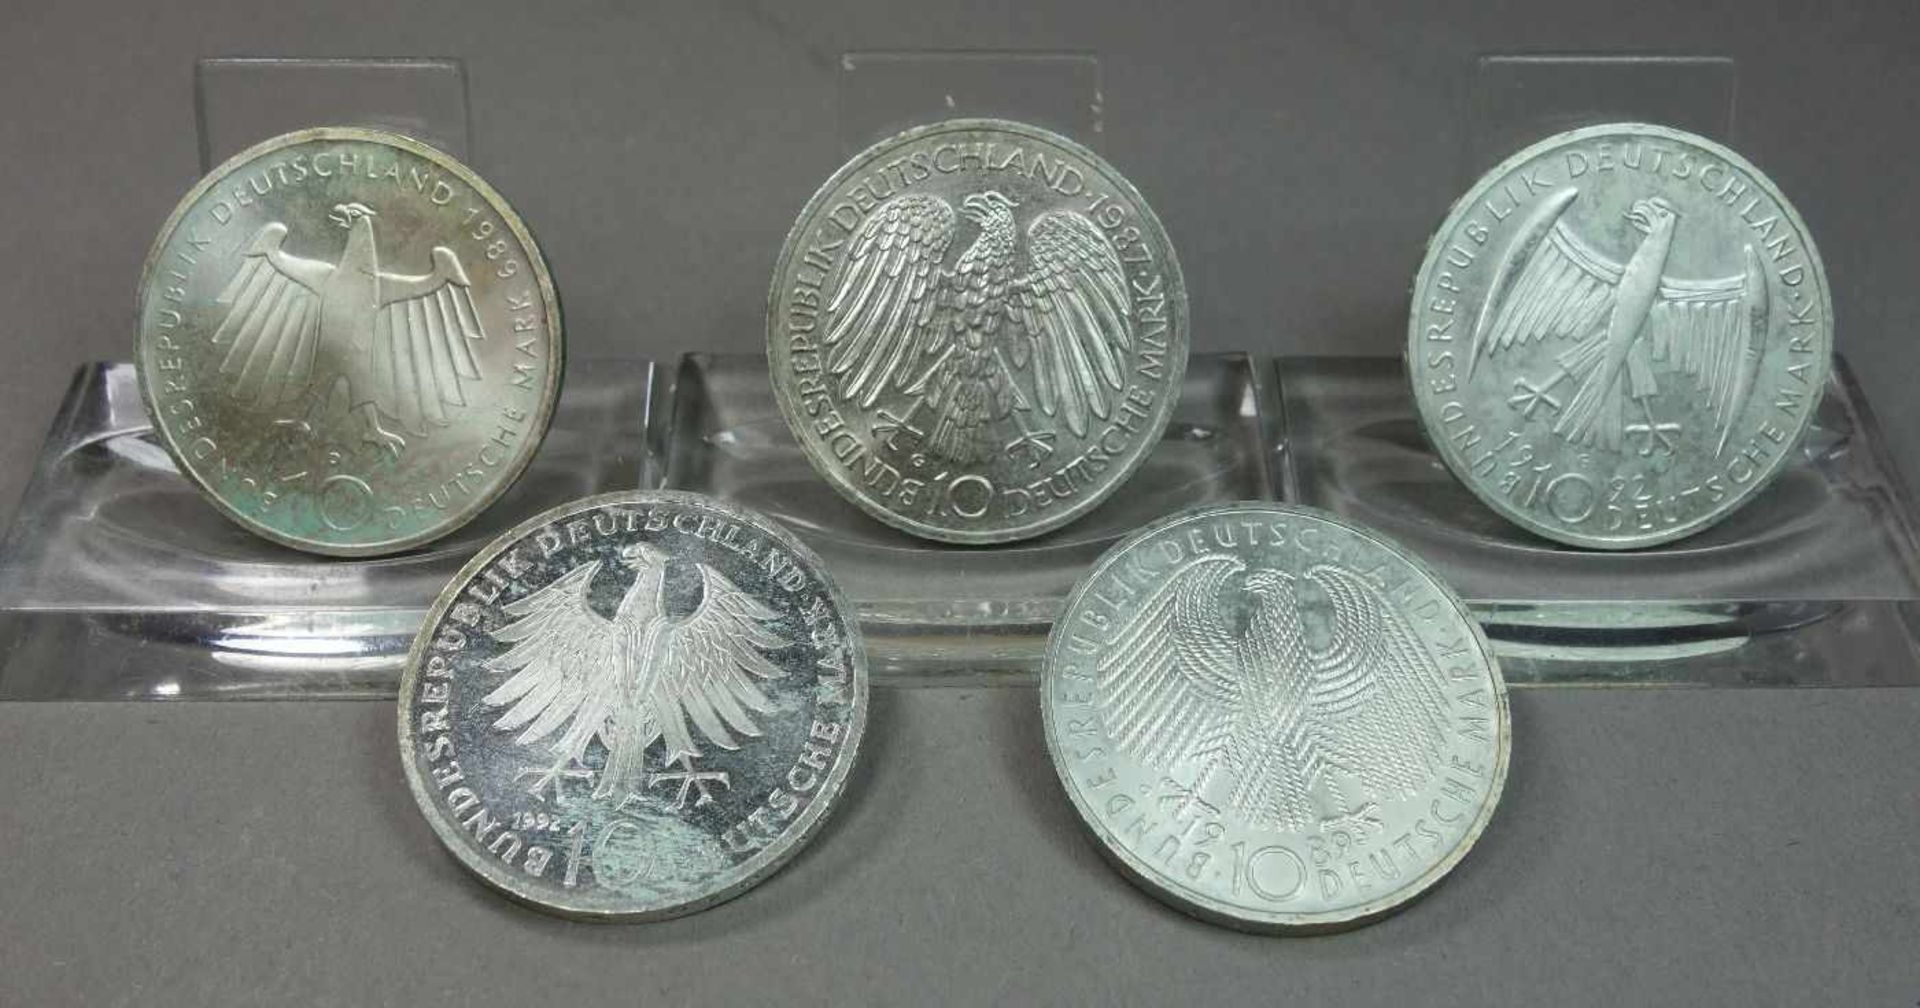 KONVOLUT MÜNZEN: 11 x 10 DM STÜCKE / coins, BRD Deutschland, unterschiedliche Jahrgänge: 1) 1989, G, - Image 7 of 7